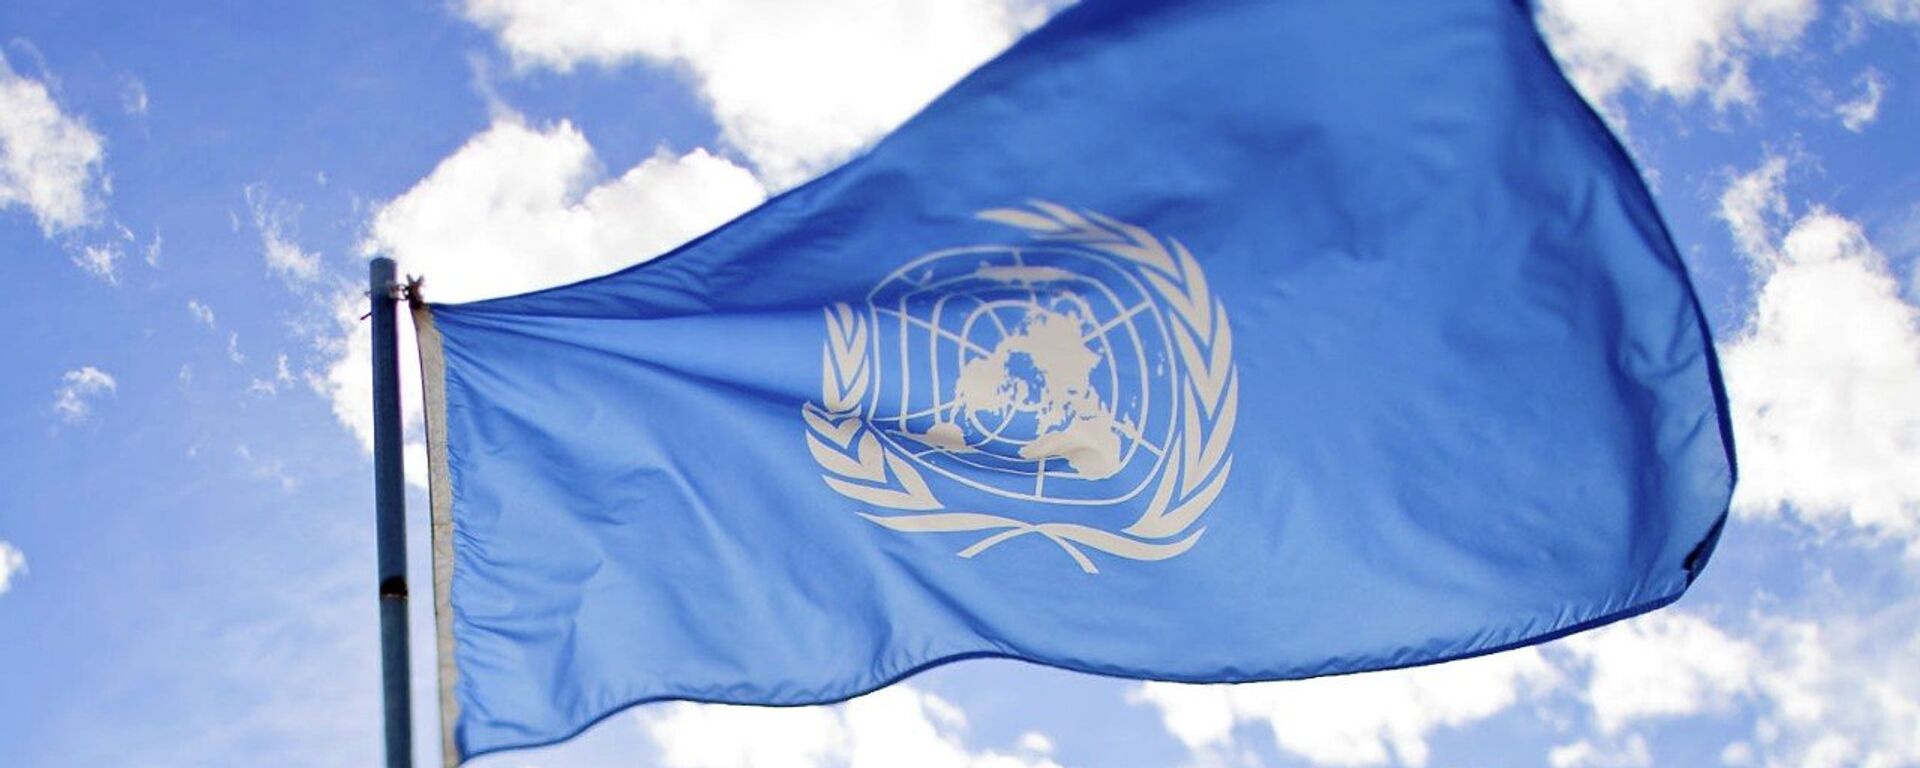 La bandera de la ONU - Sputnik Mundo, 1920, 28.05.2021